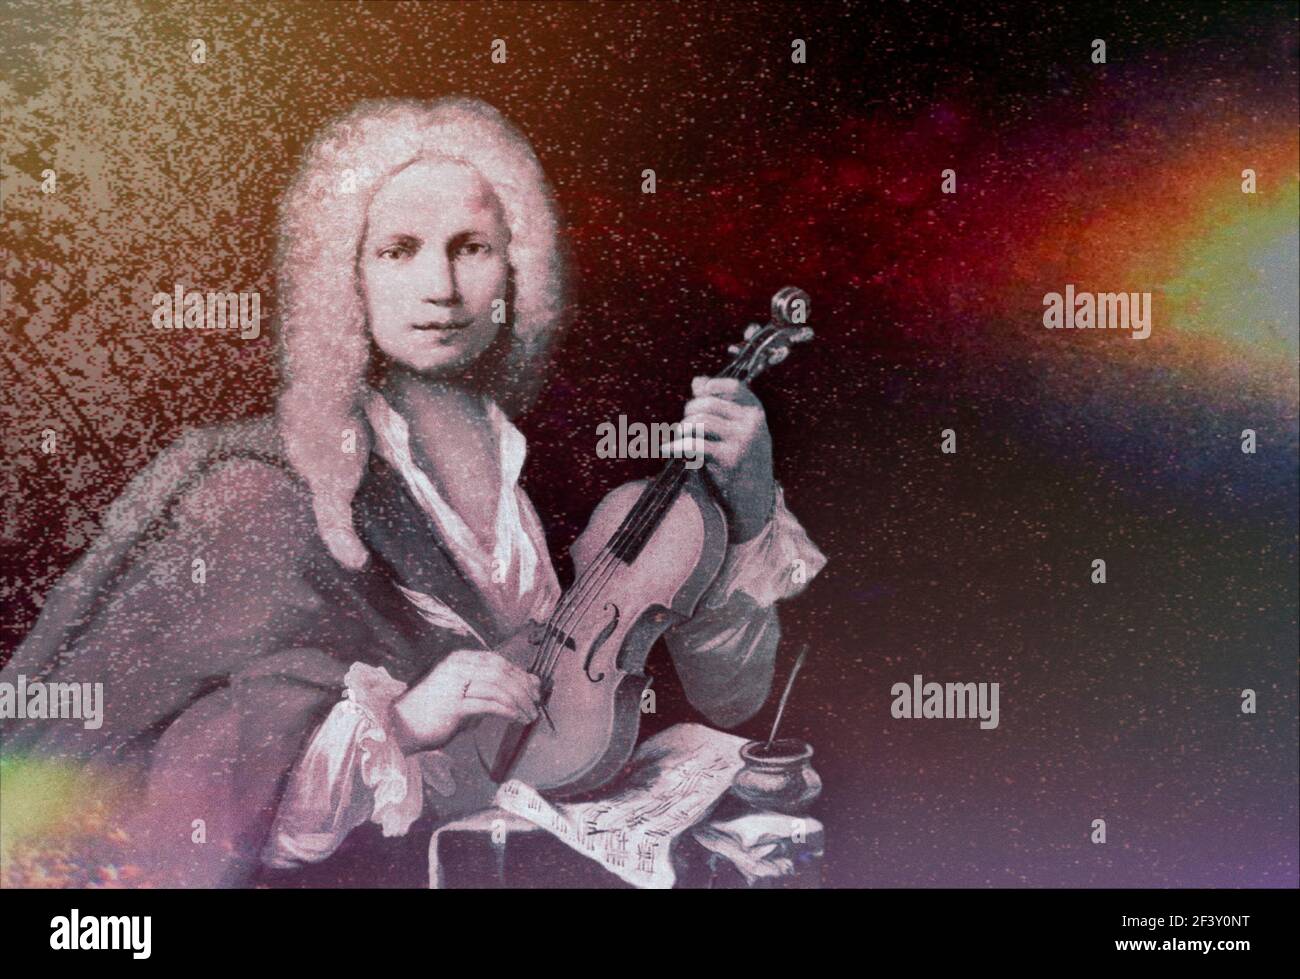 Antonio Lucio Vivaldi, 1678 – 1741, compositore barocco italiano, violinista virtuoso Foto Stock